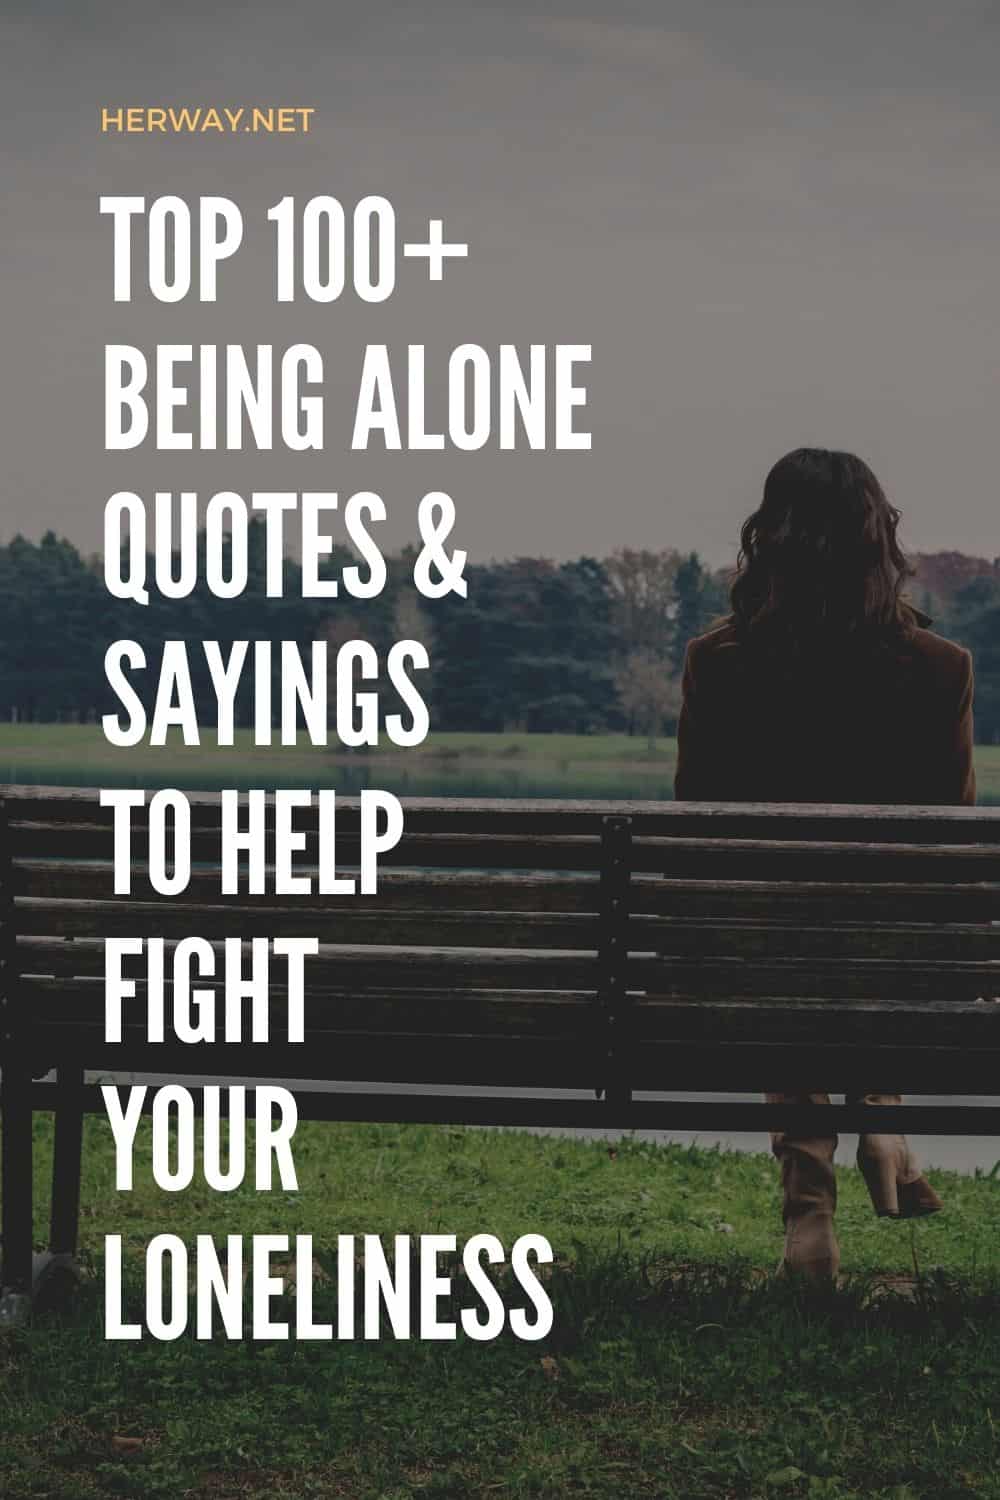 Top 100+ citazioni e detti sull'essere soli per combattere la solitudine